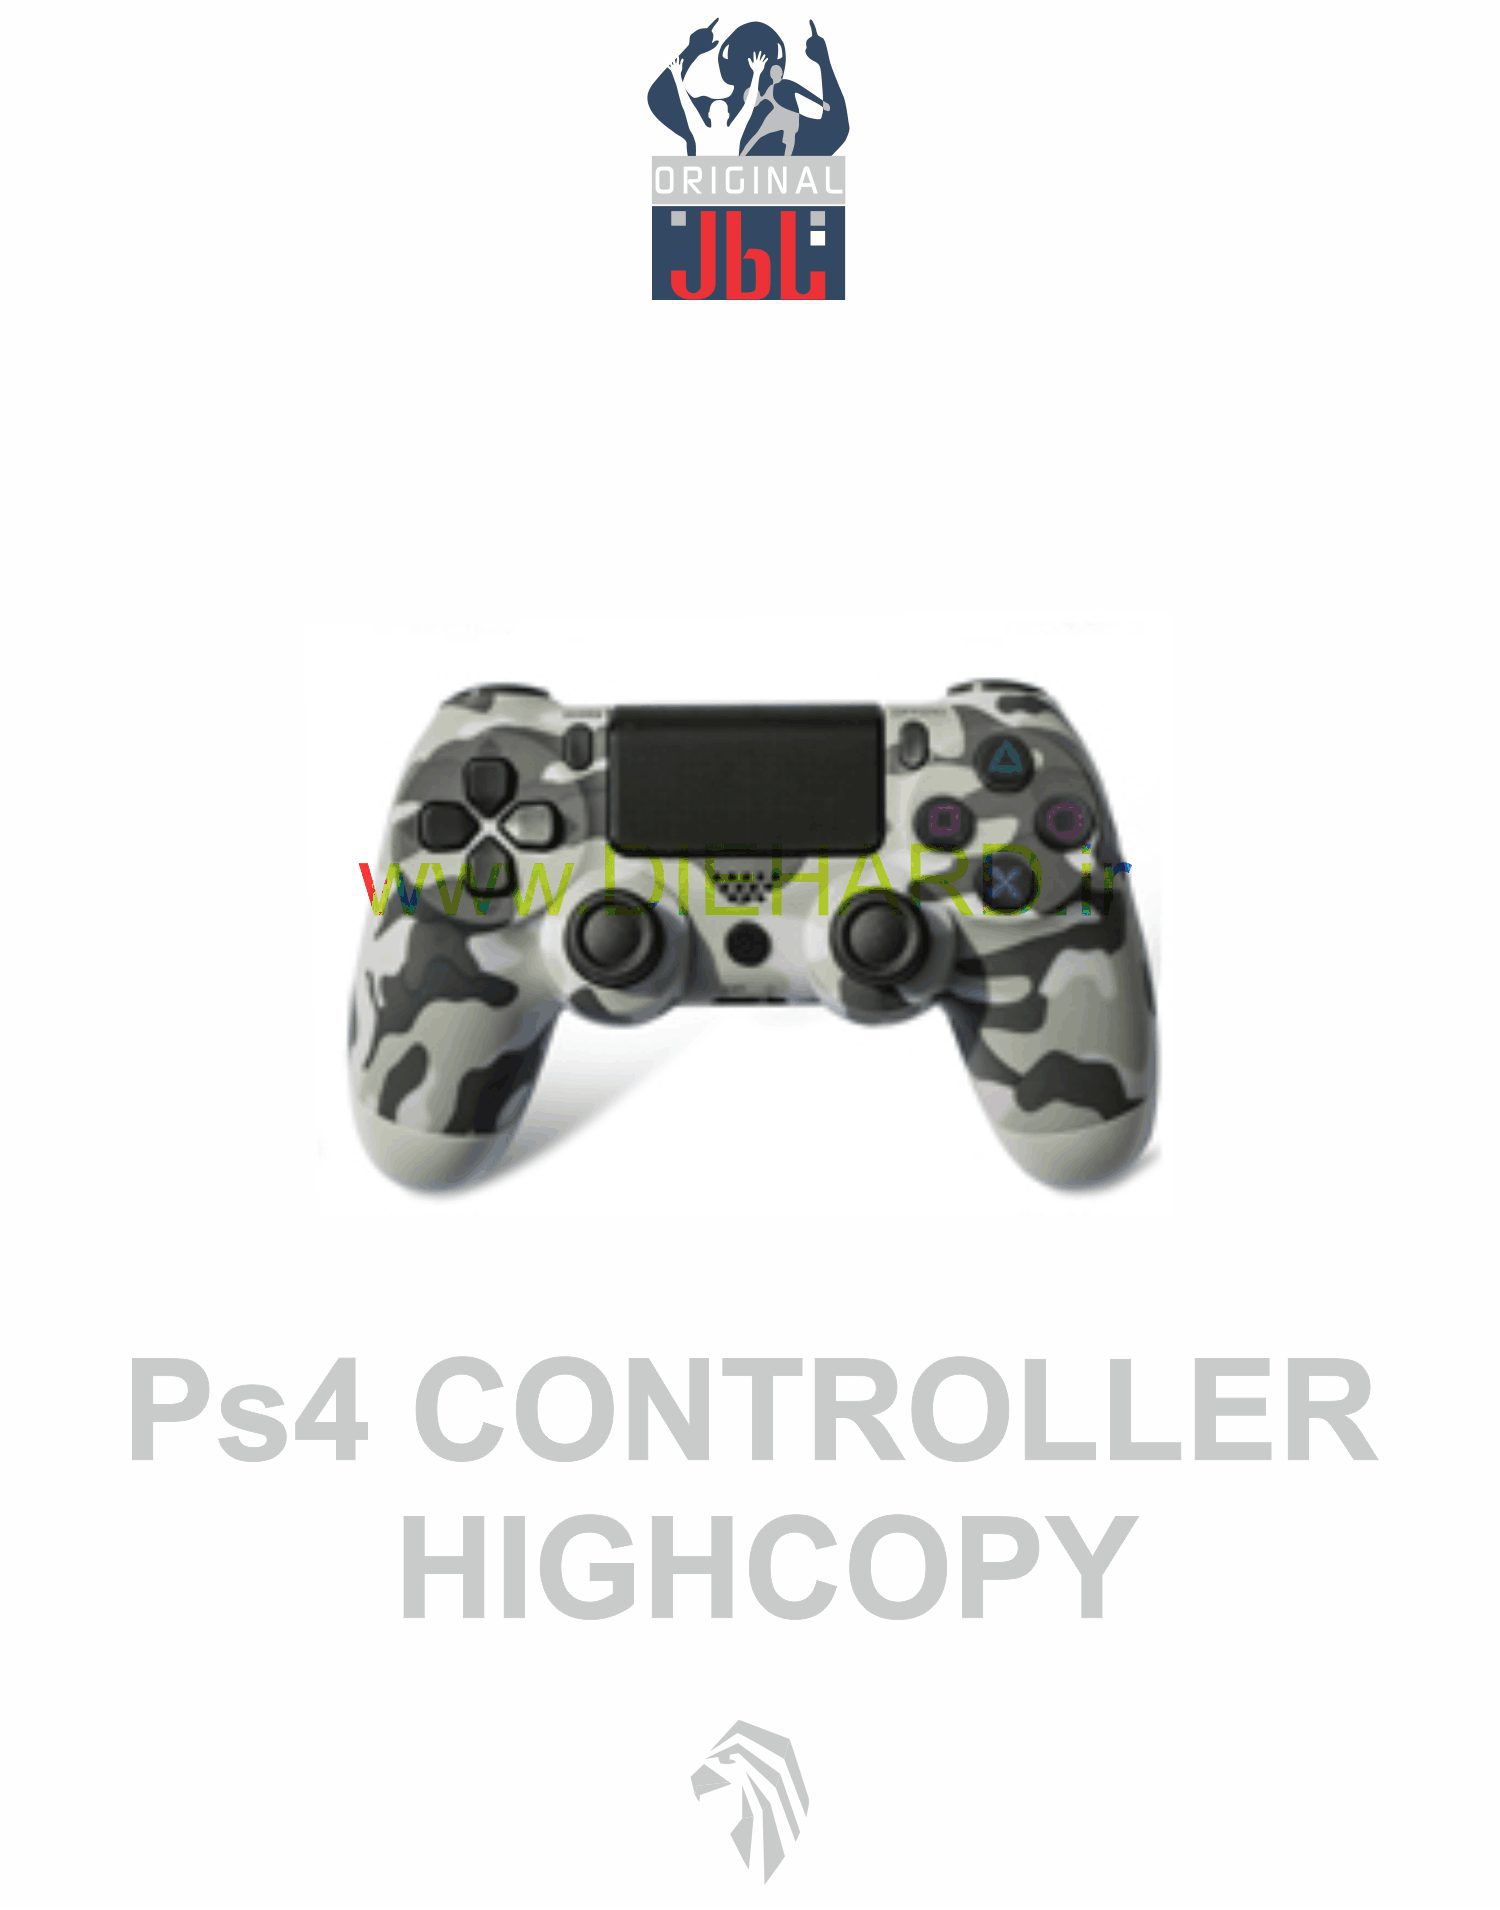 لوازم جانبی - دسته بلوتوث ارتشی طوسی PS4 Hi-Copy